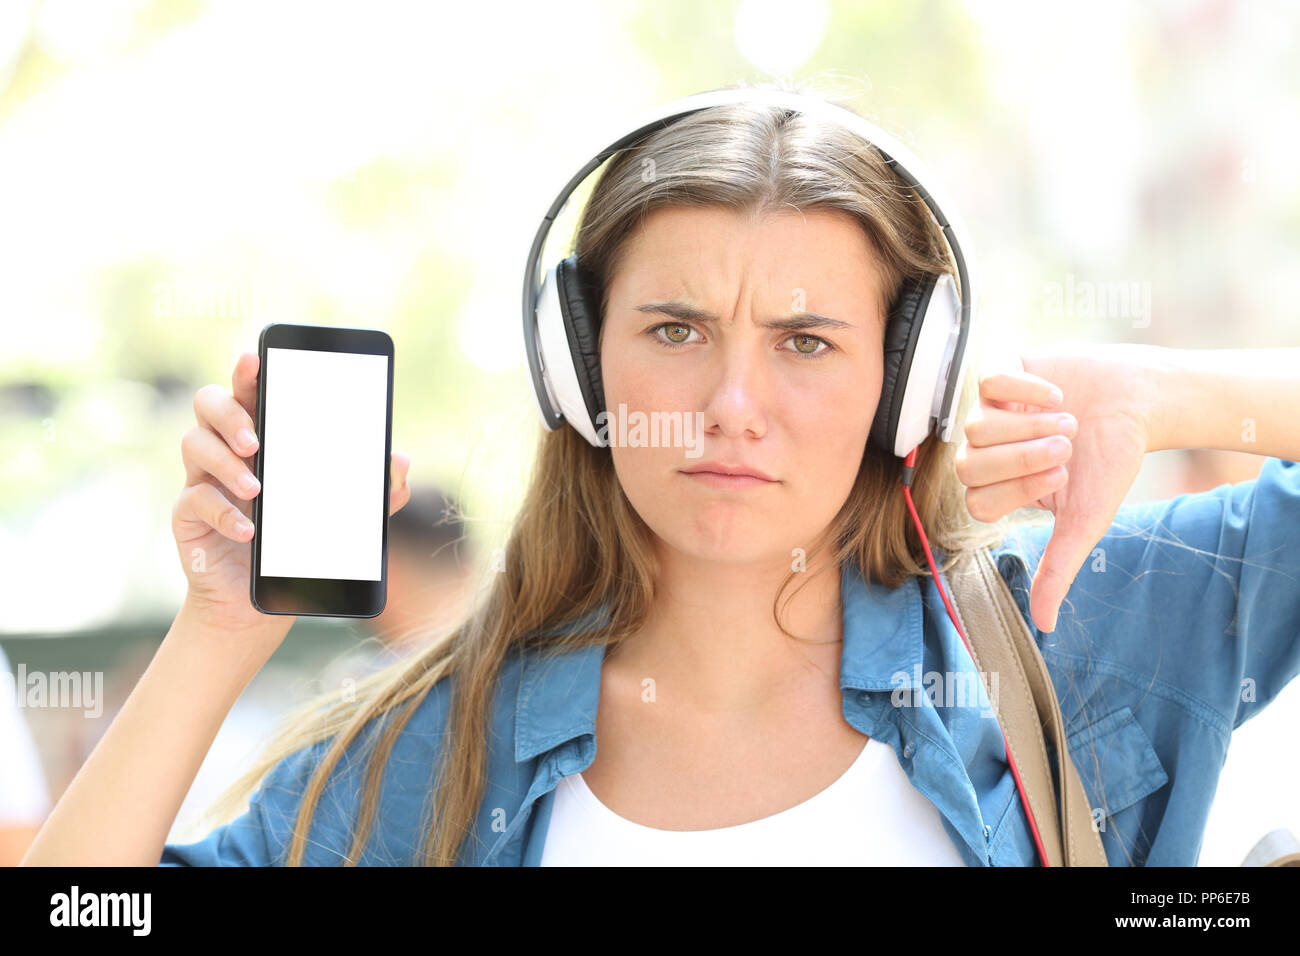 Vue avant, portrait d'un ado en colère l'écoute de musique montrant un écran de téléphone intelligent dans la rue Banque D'Images